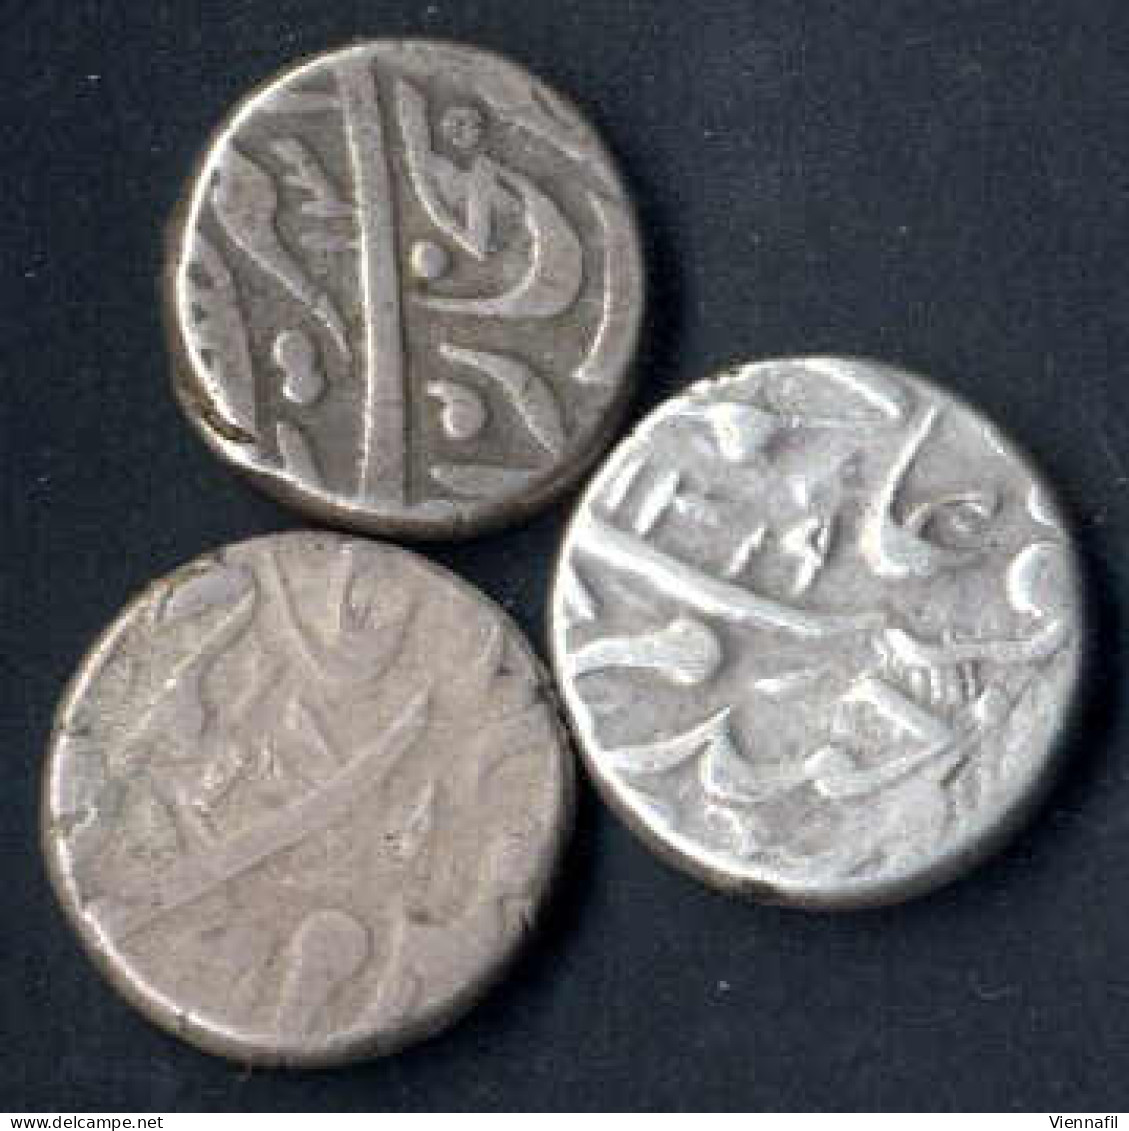 Russisch Turkestan Emirat Von Bukhara, Tenga Silber, 1299,1306,1310,1319 AH, Craig 91 Y 2, Sehr Schön-, 6 Stück - Usbekistan